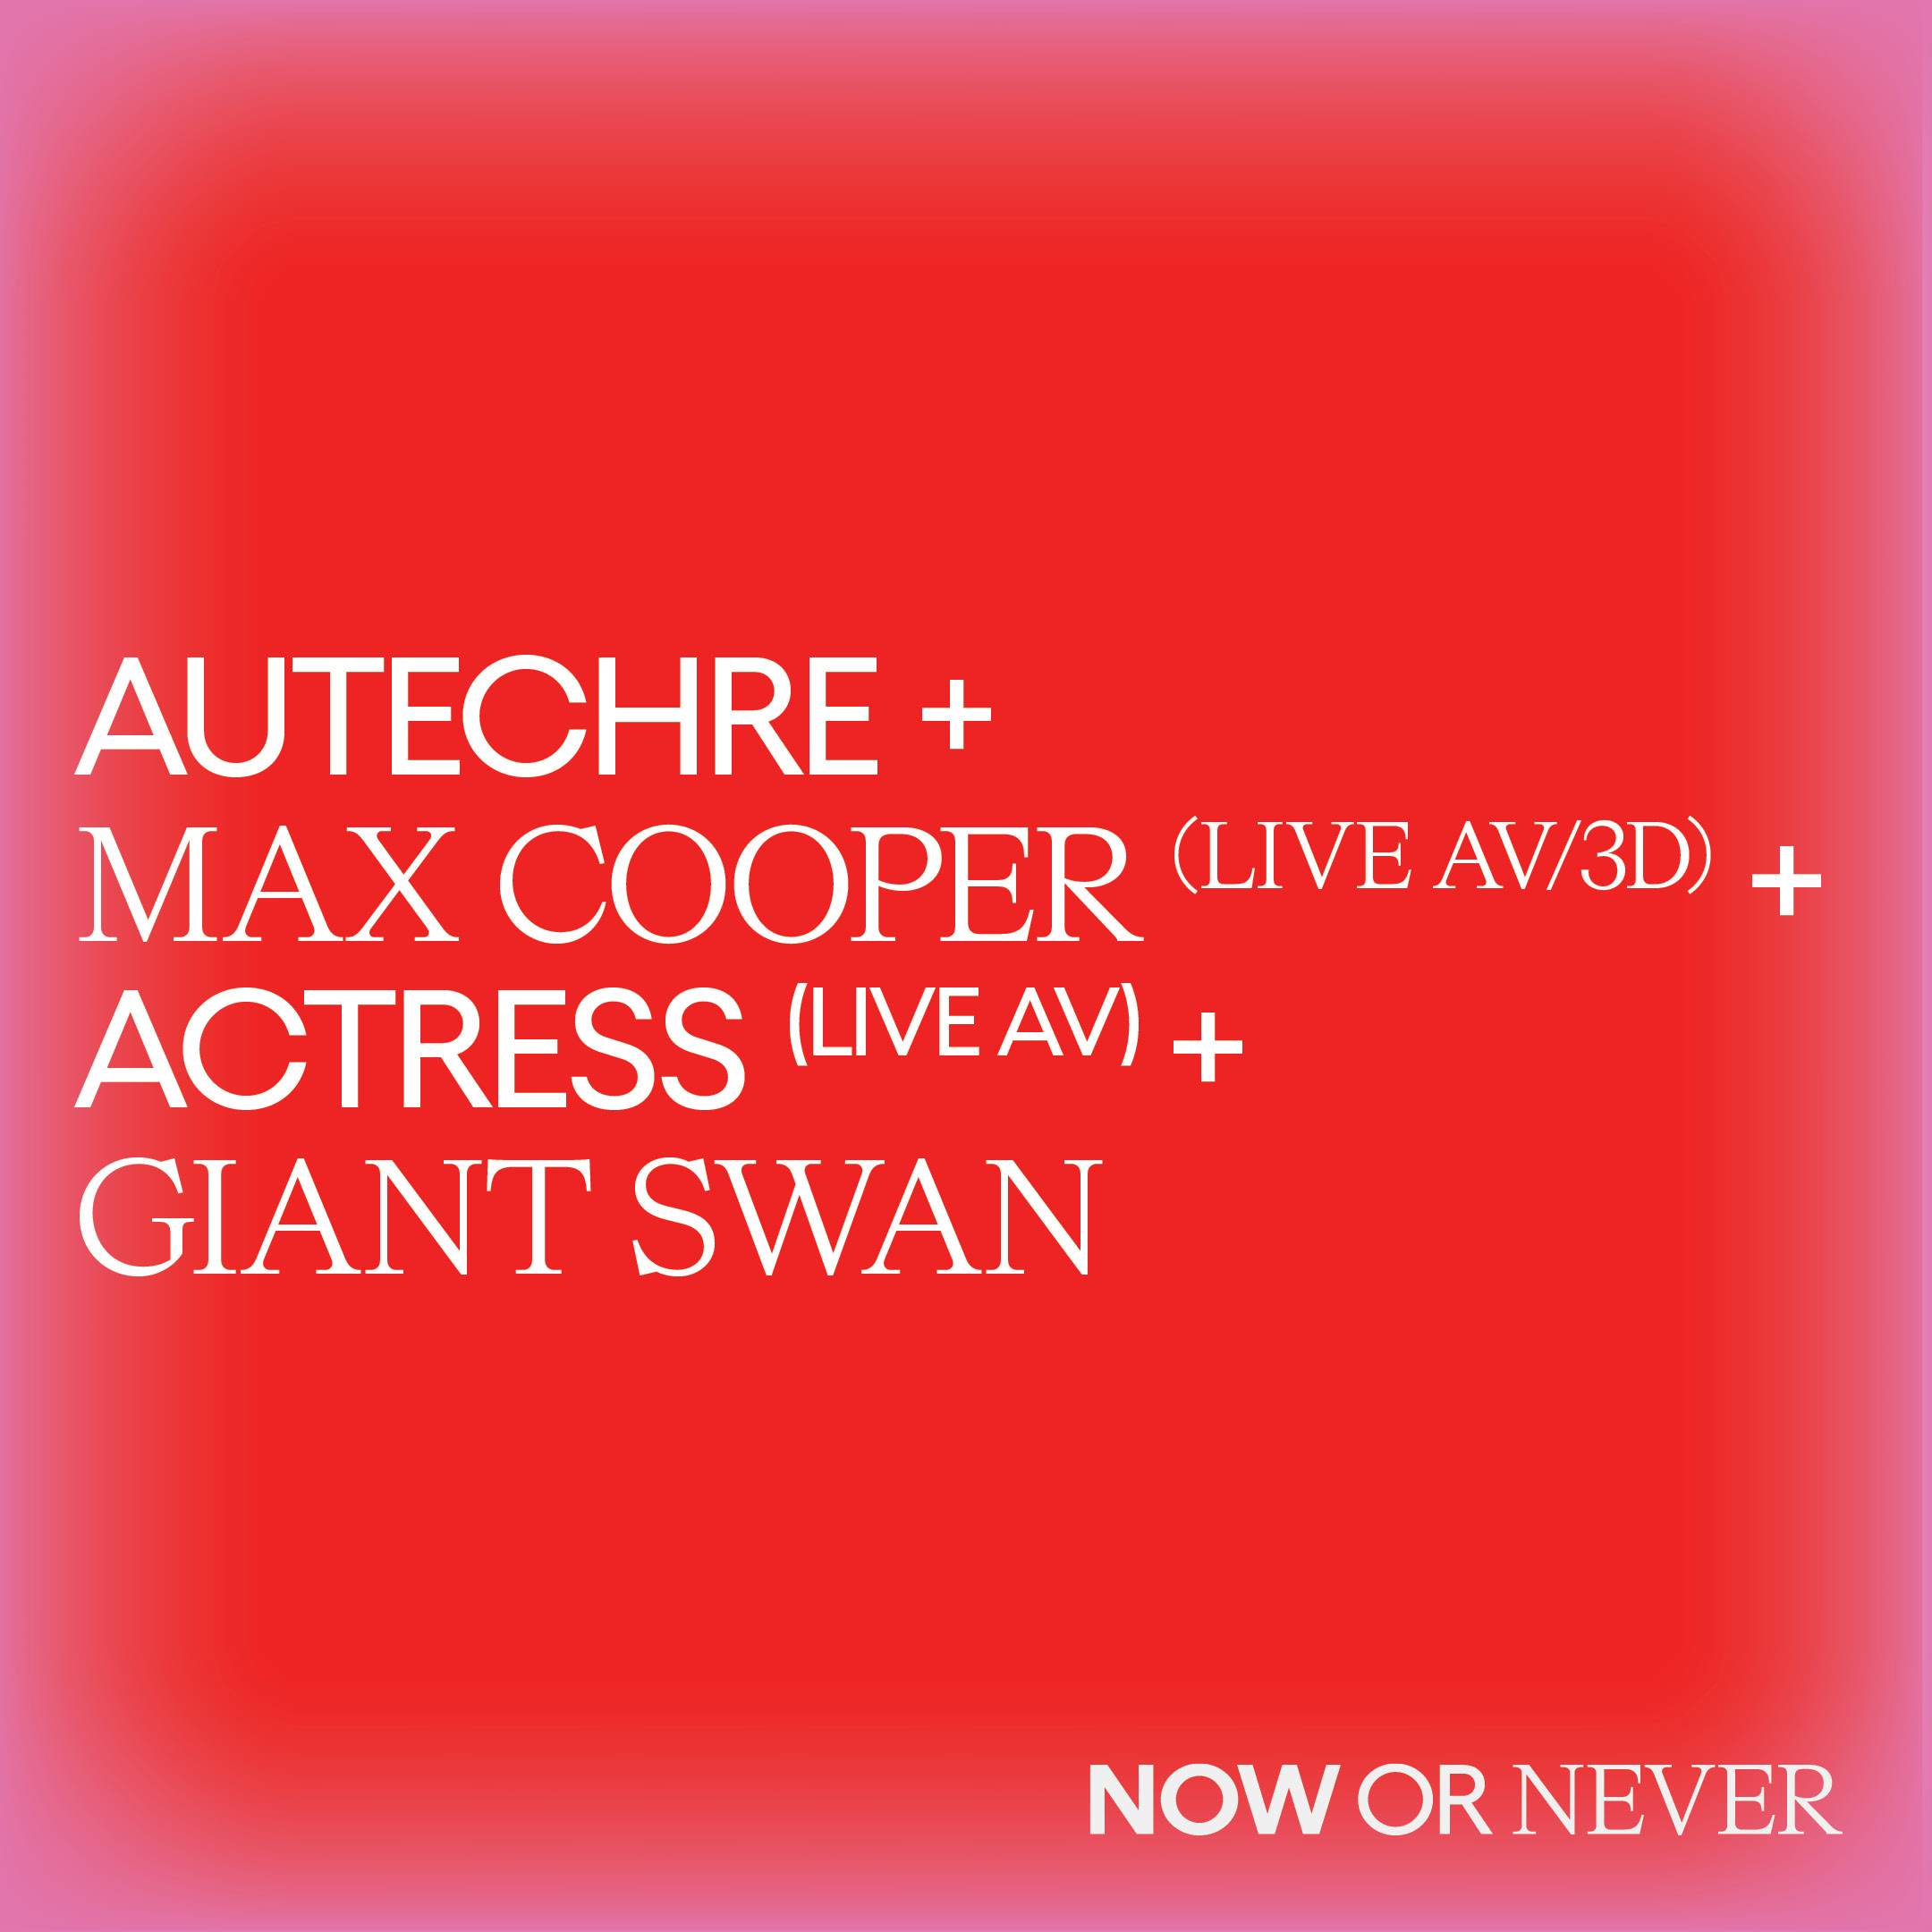 Autechre + Max Cooper (Live AV/3D) + Actress (Live AV) + Giant Swan - フライヤー表